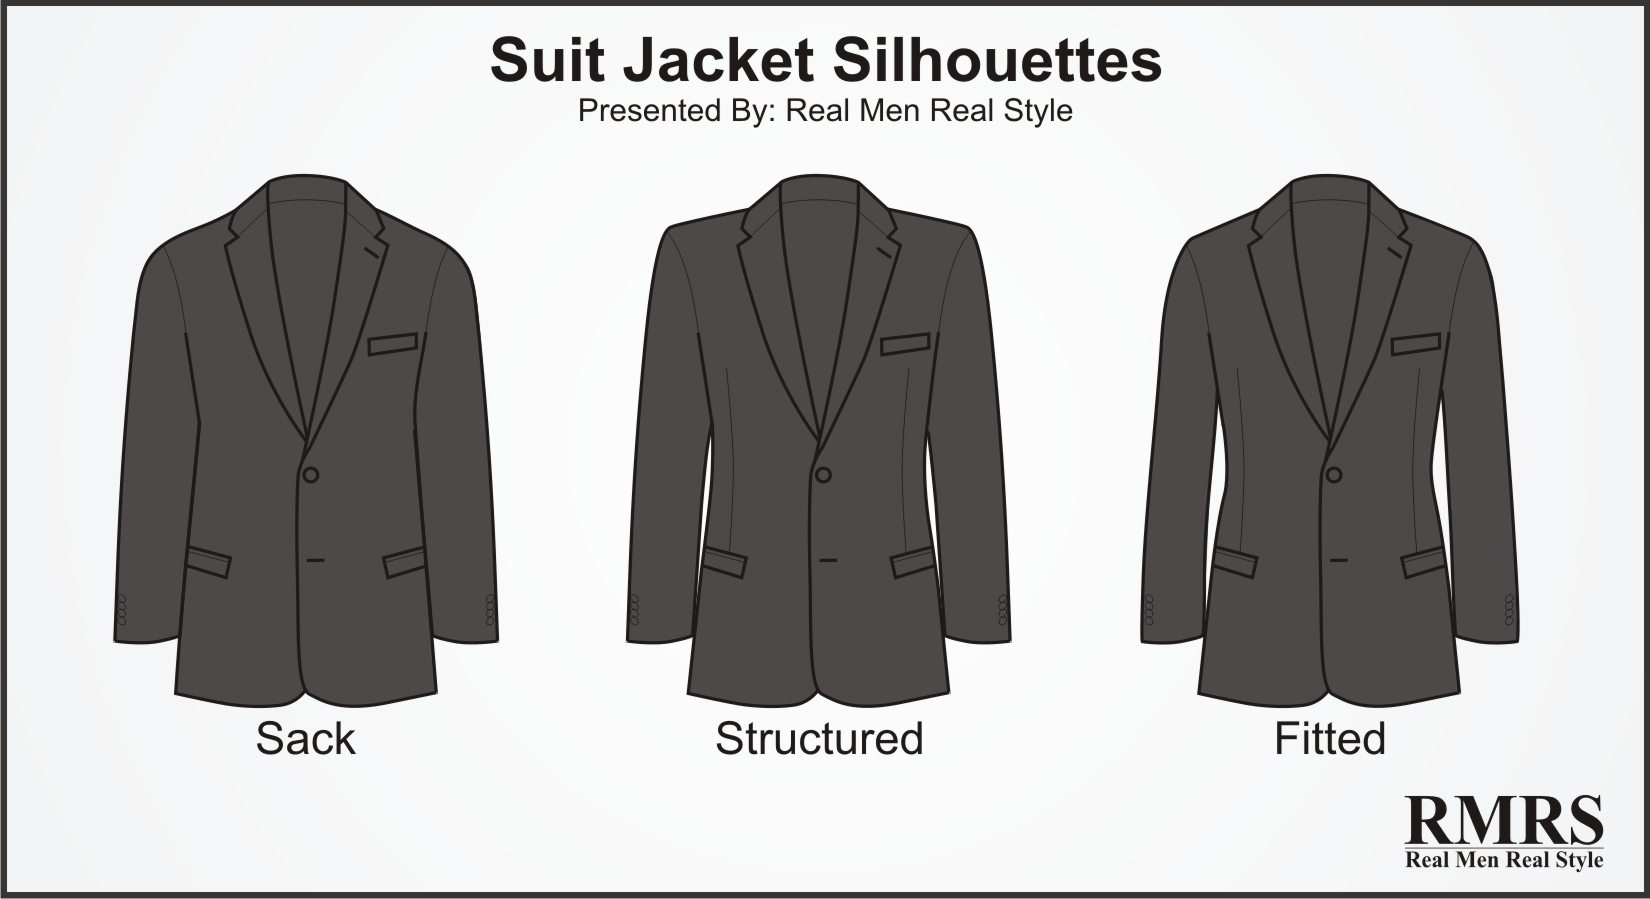 10 Suit Jacket Style Details Men Should Know | Suit Jackets ...